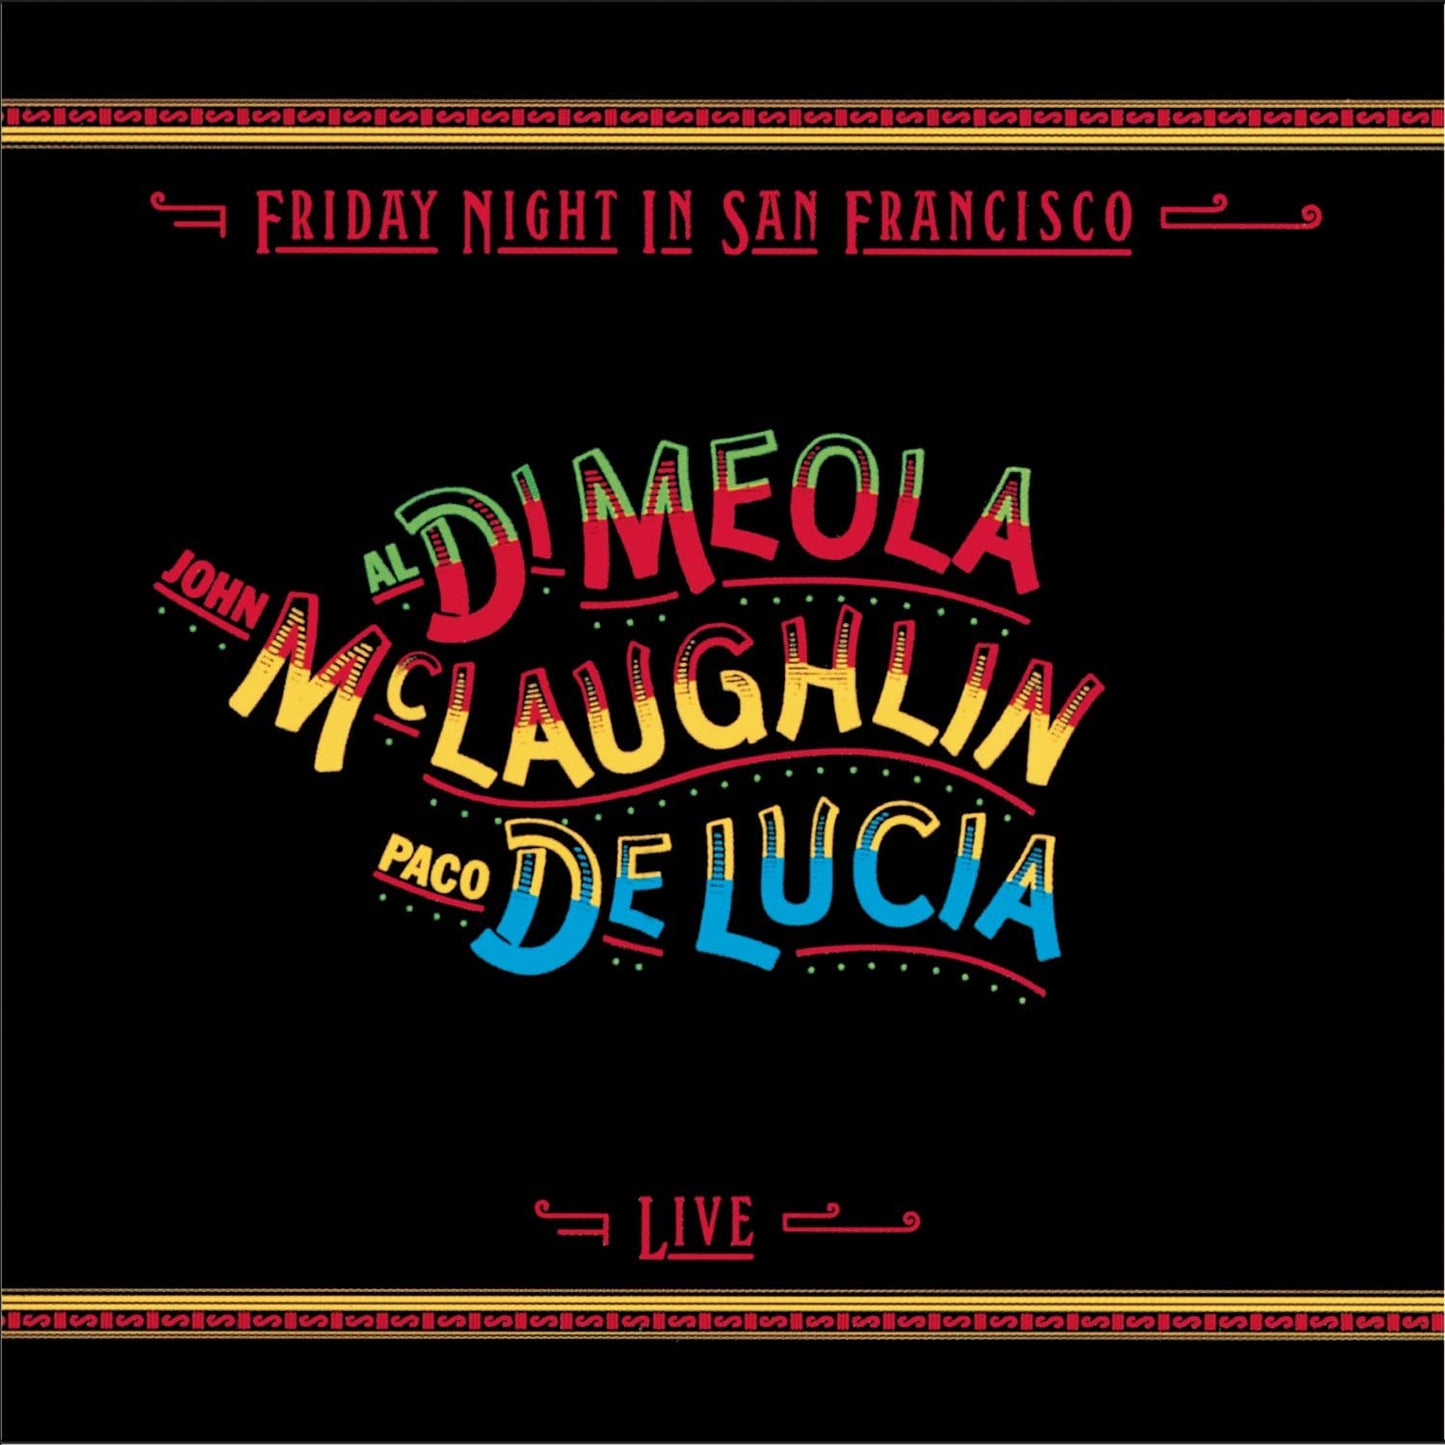 Al DiMeola / John McLaughlin / Paco De Lucia - Friday Night In San Francisco -CD